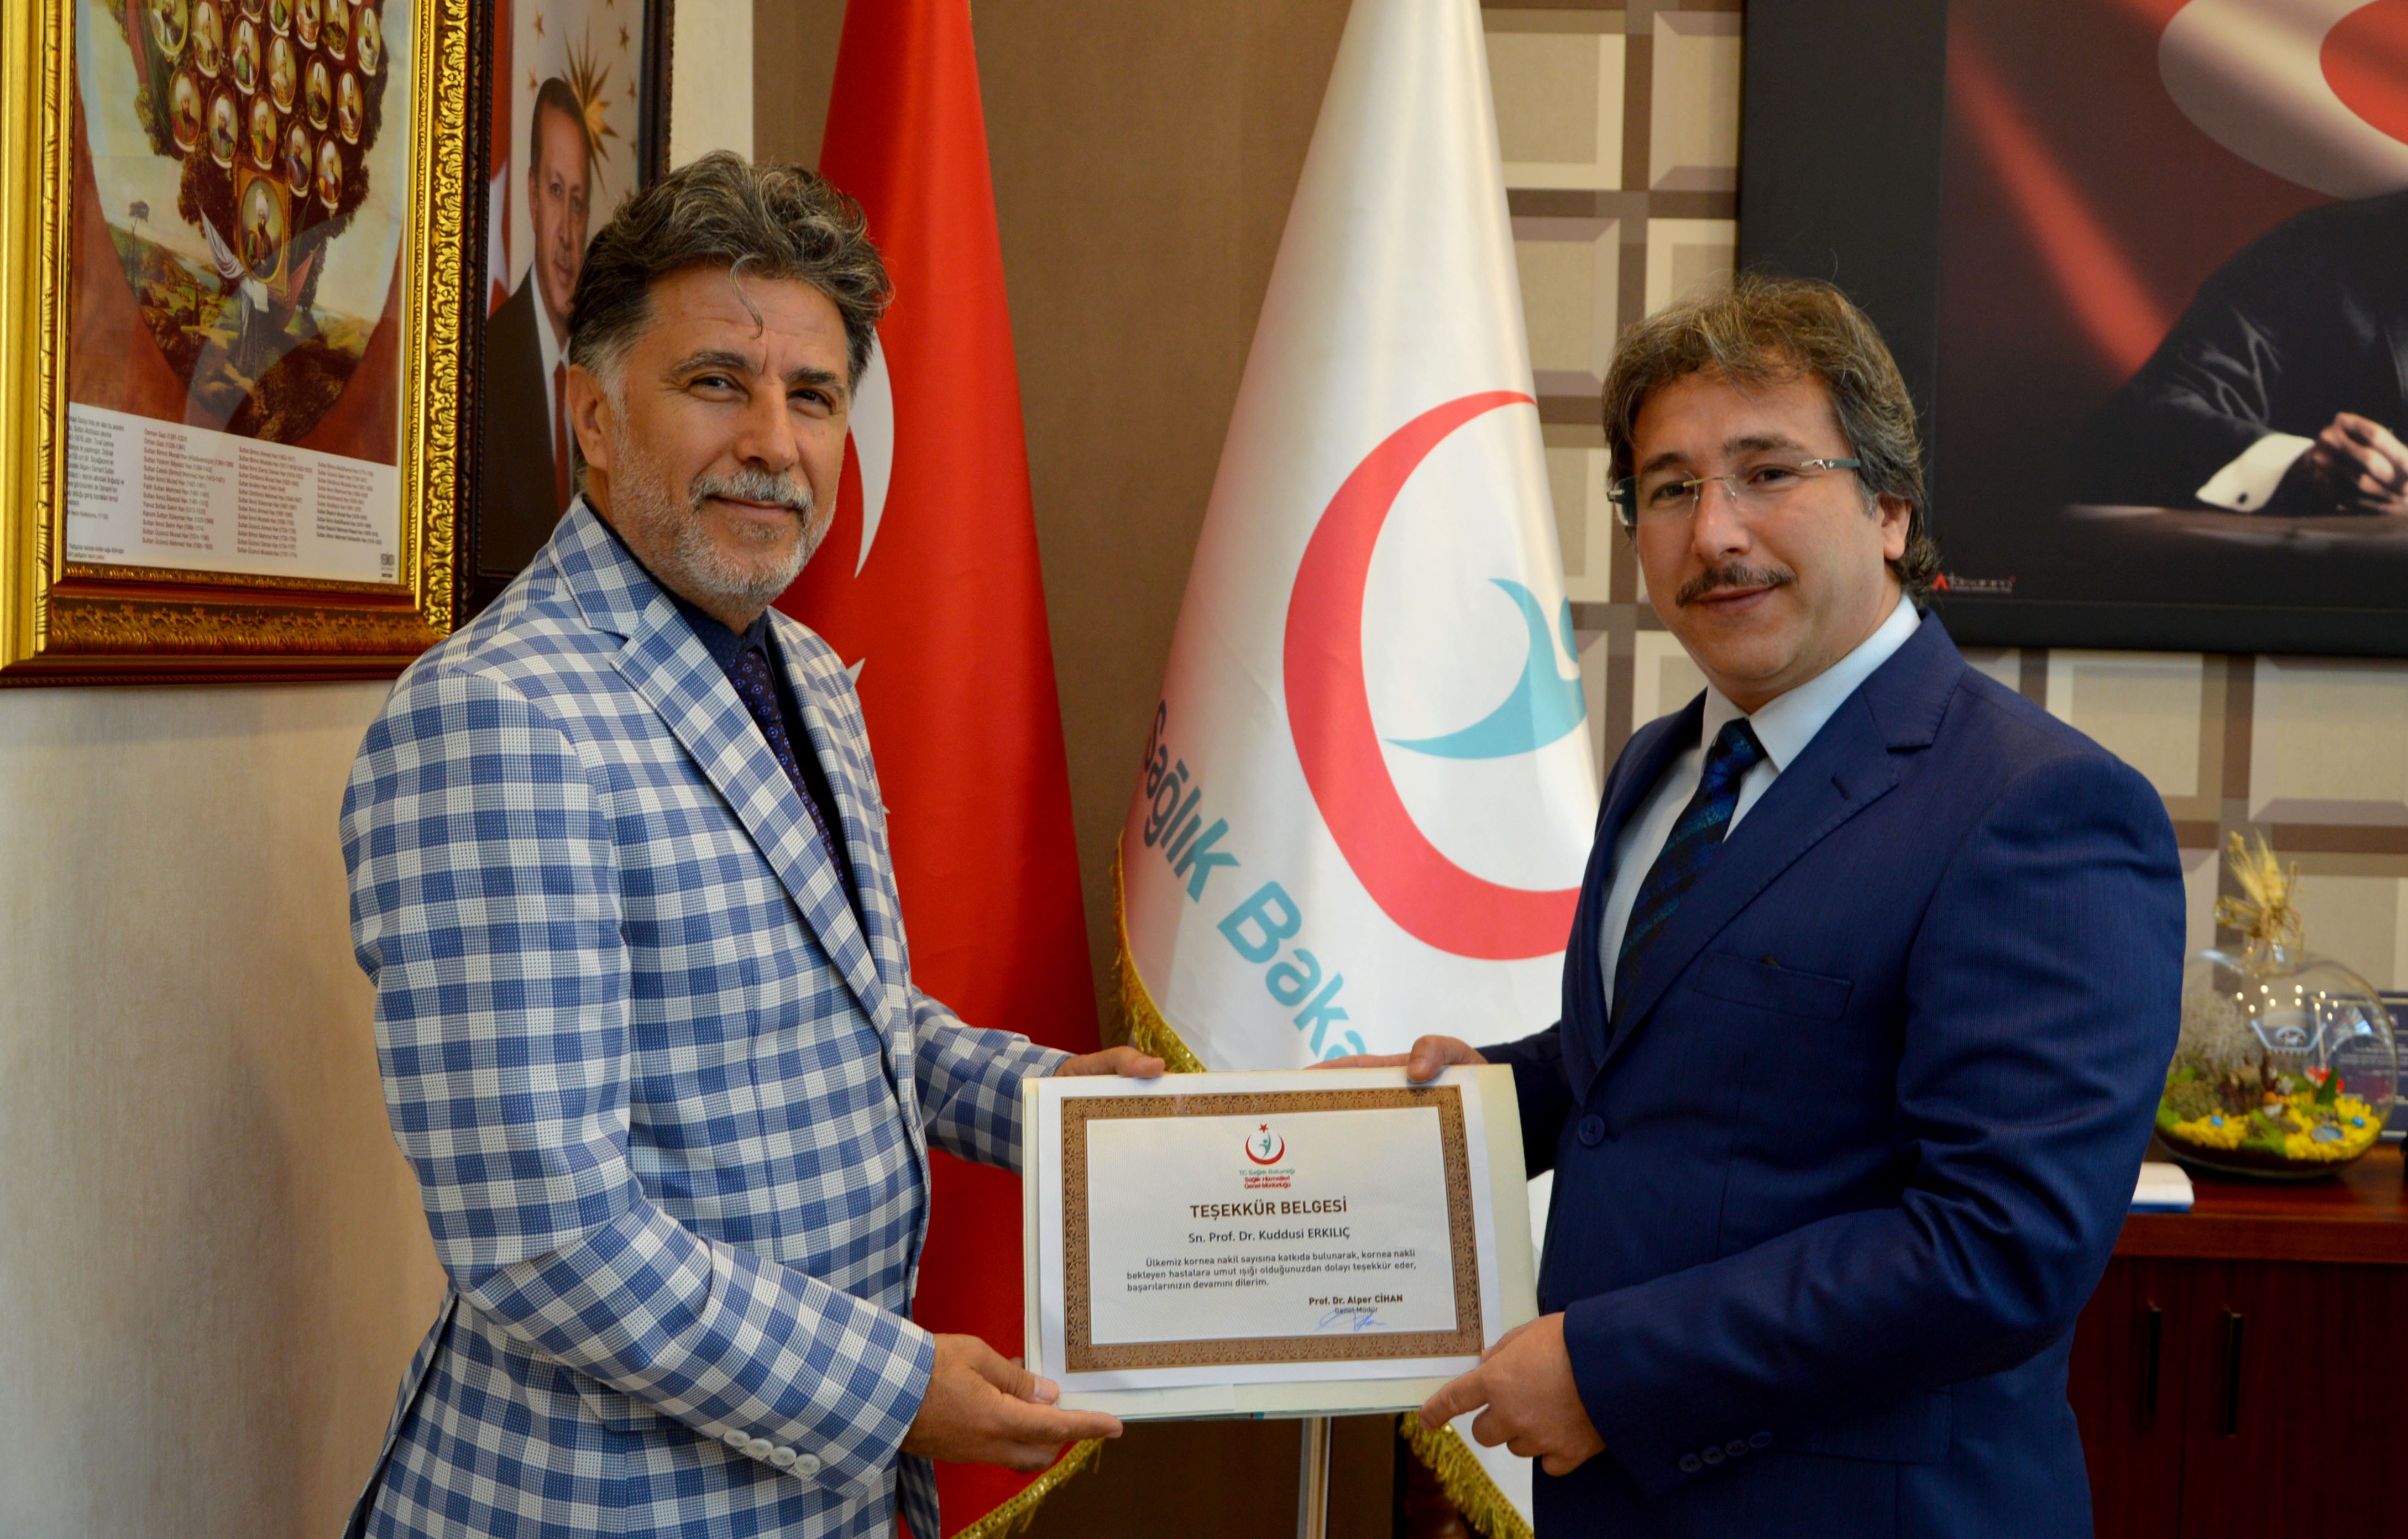 En Çok Kornea Nakli Yapan Prof. Dr. Kuddusi Erkılıç’a Sağlık Bakanlığı’ndan Teşekkür Belgesi